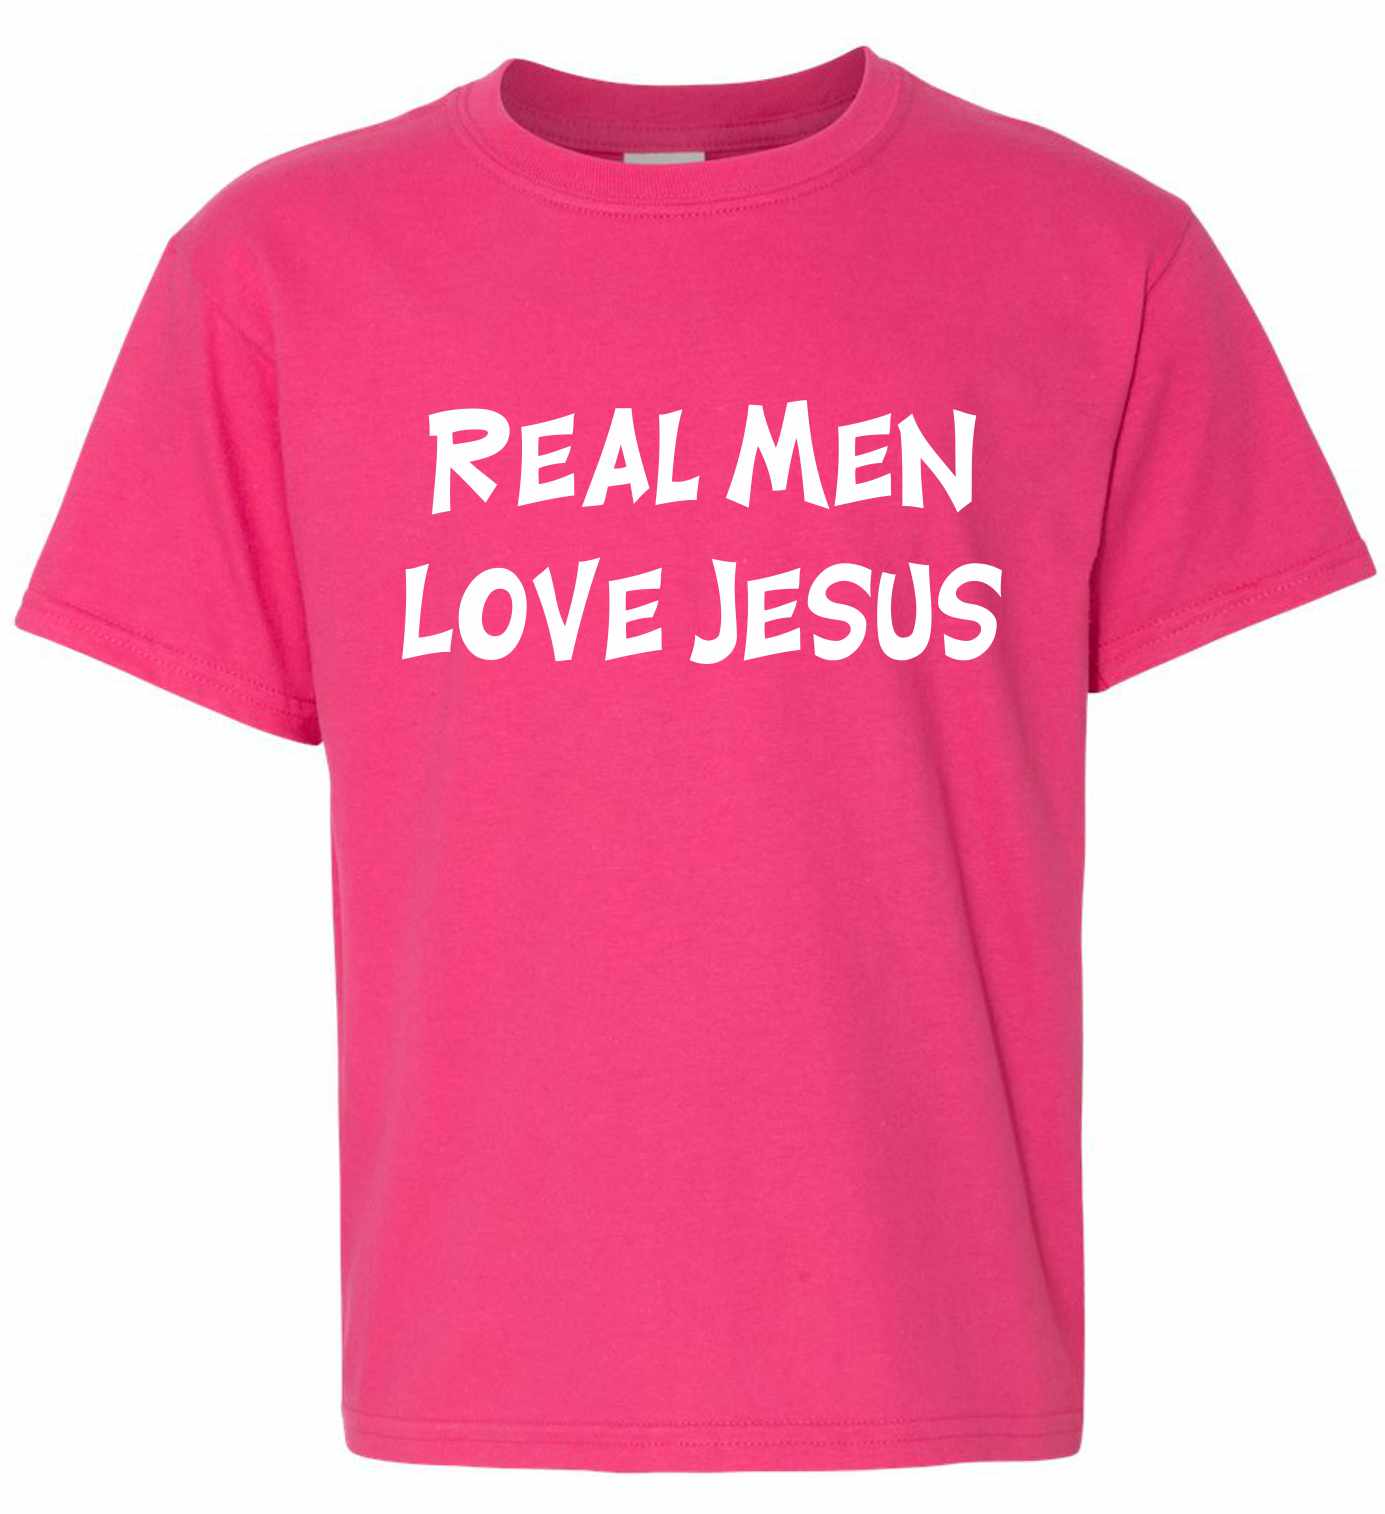 Real Men Love Jesus on Kids T-Shirt (#81-201)